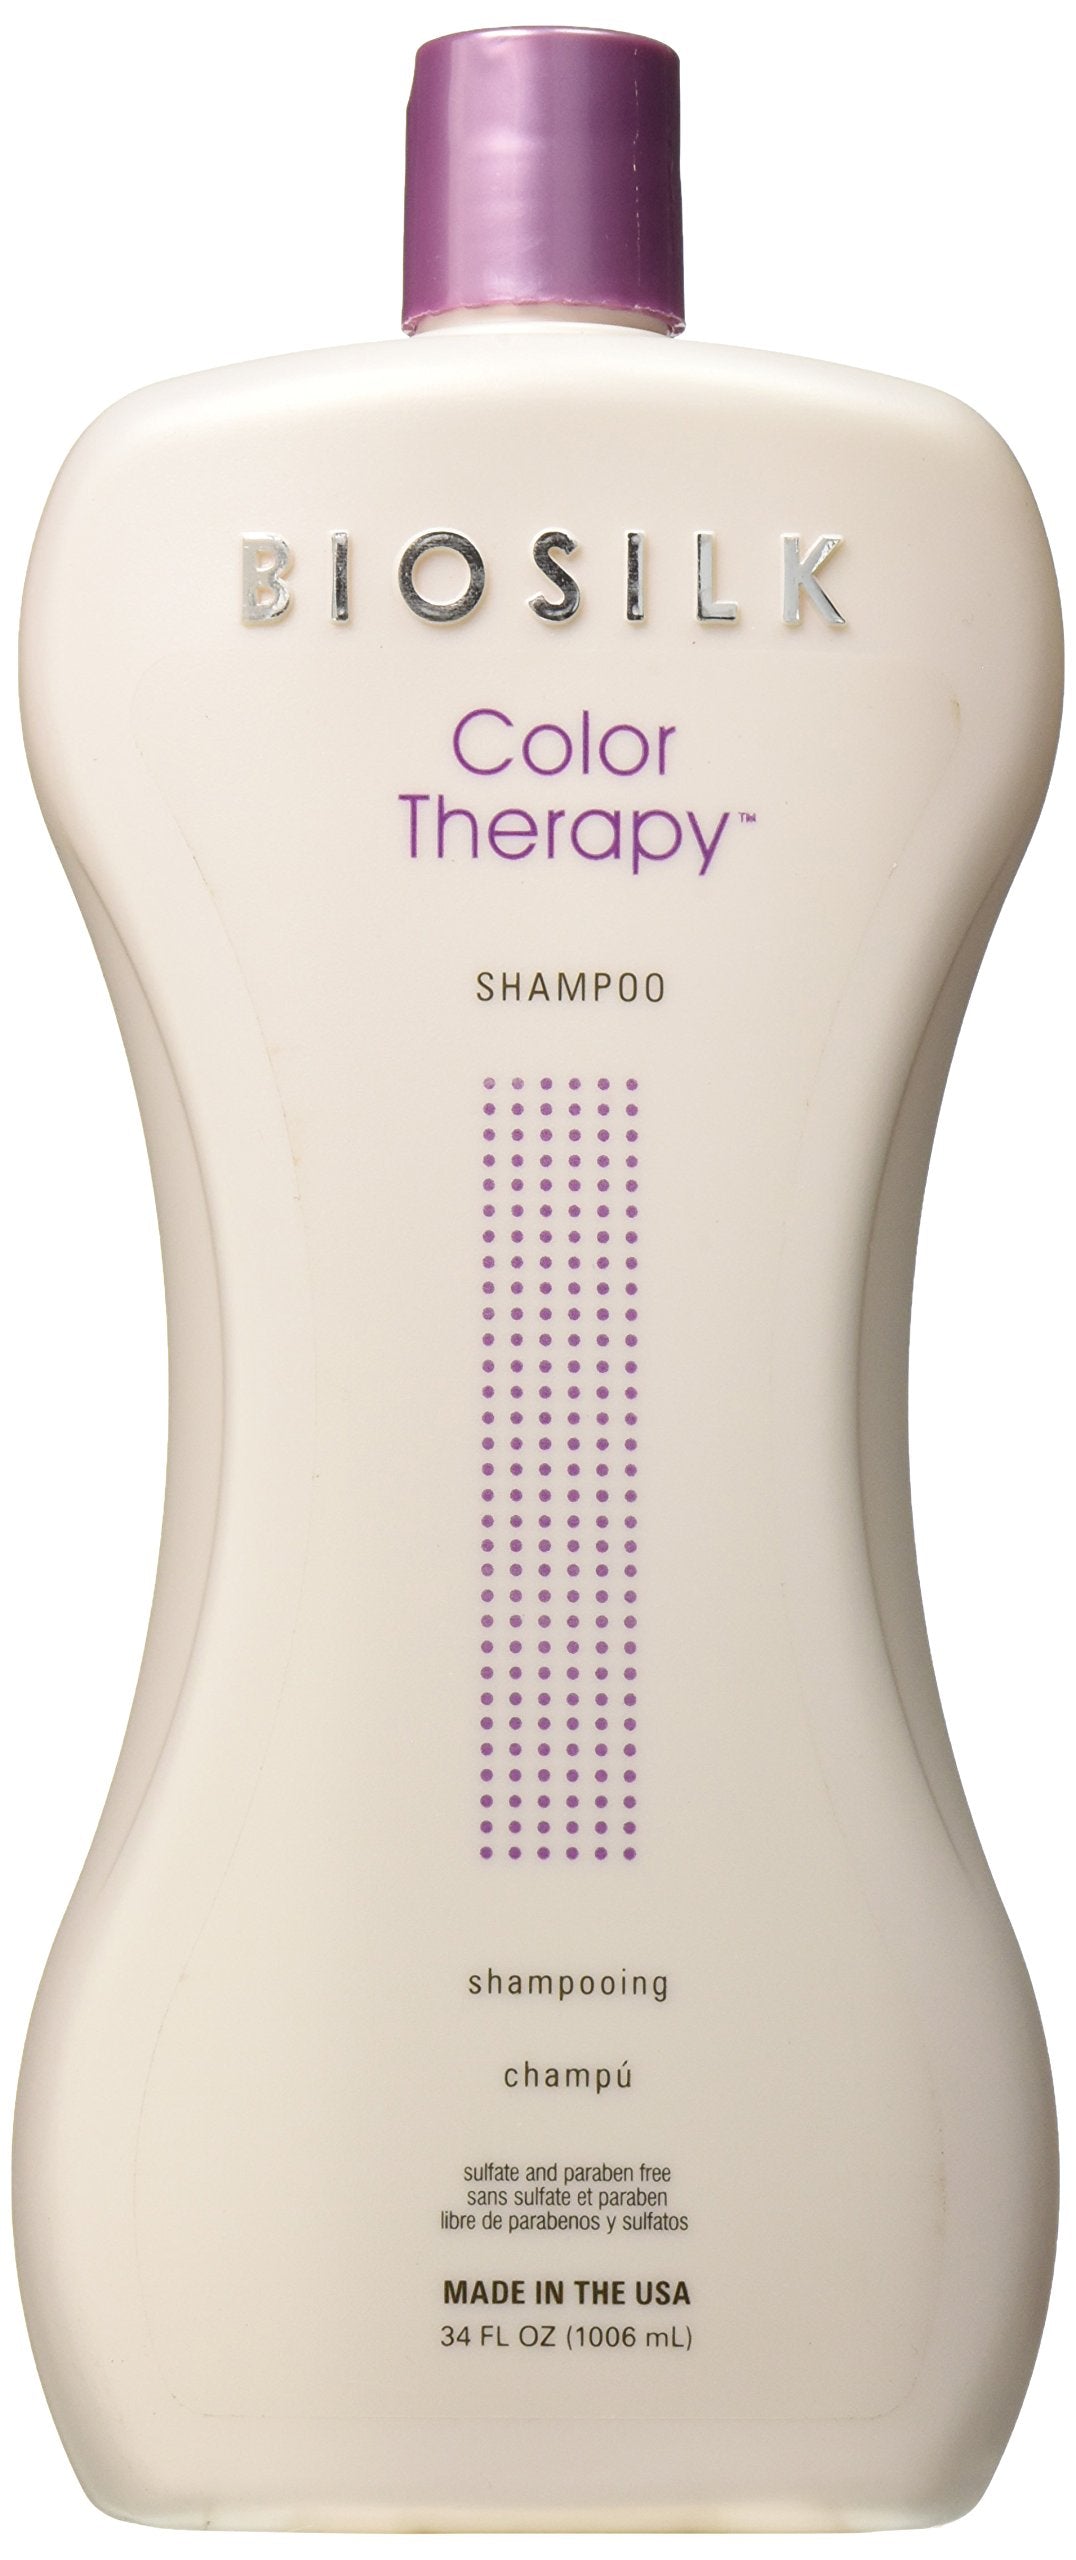 FAROUK  Biosilk Color Therapy Shampoo 1006 ml